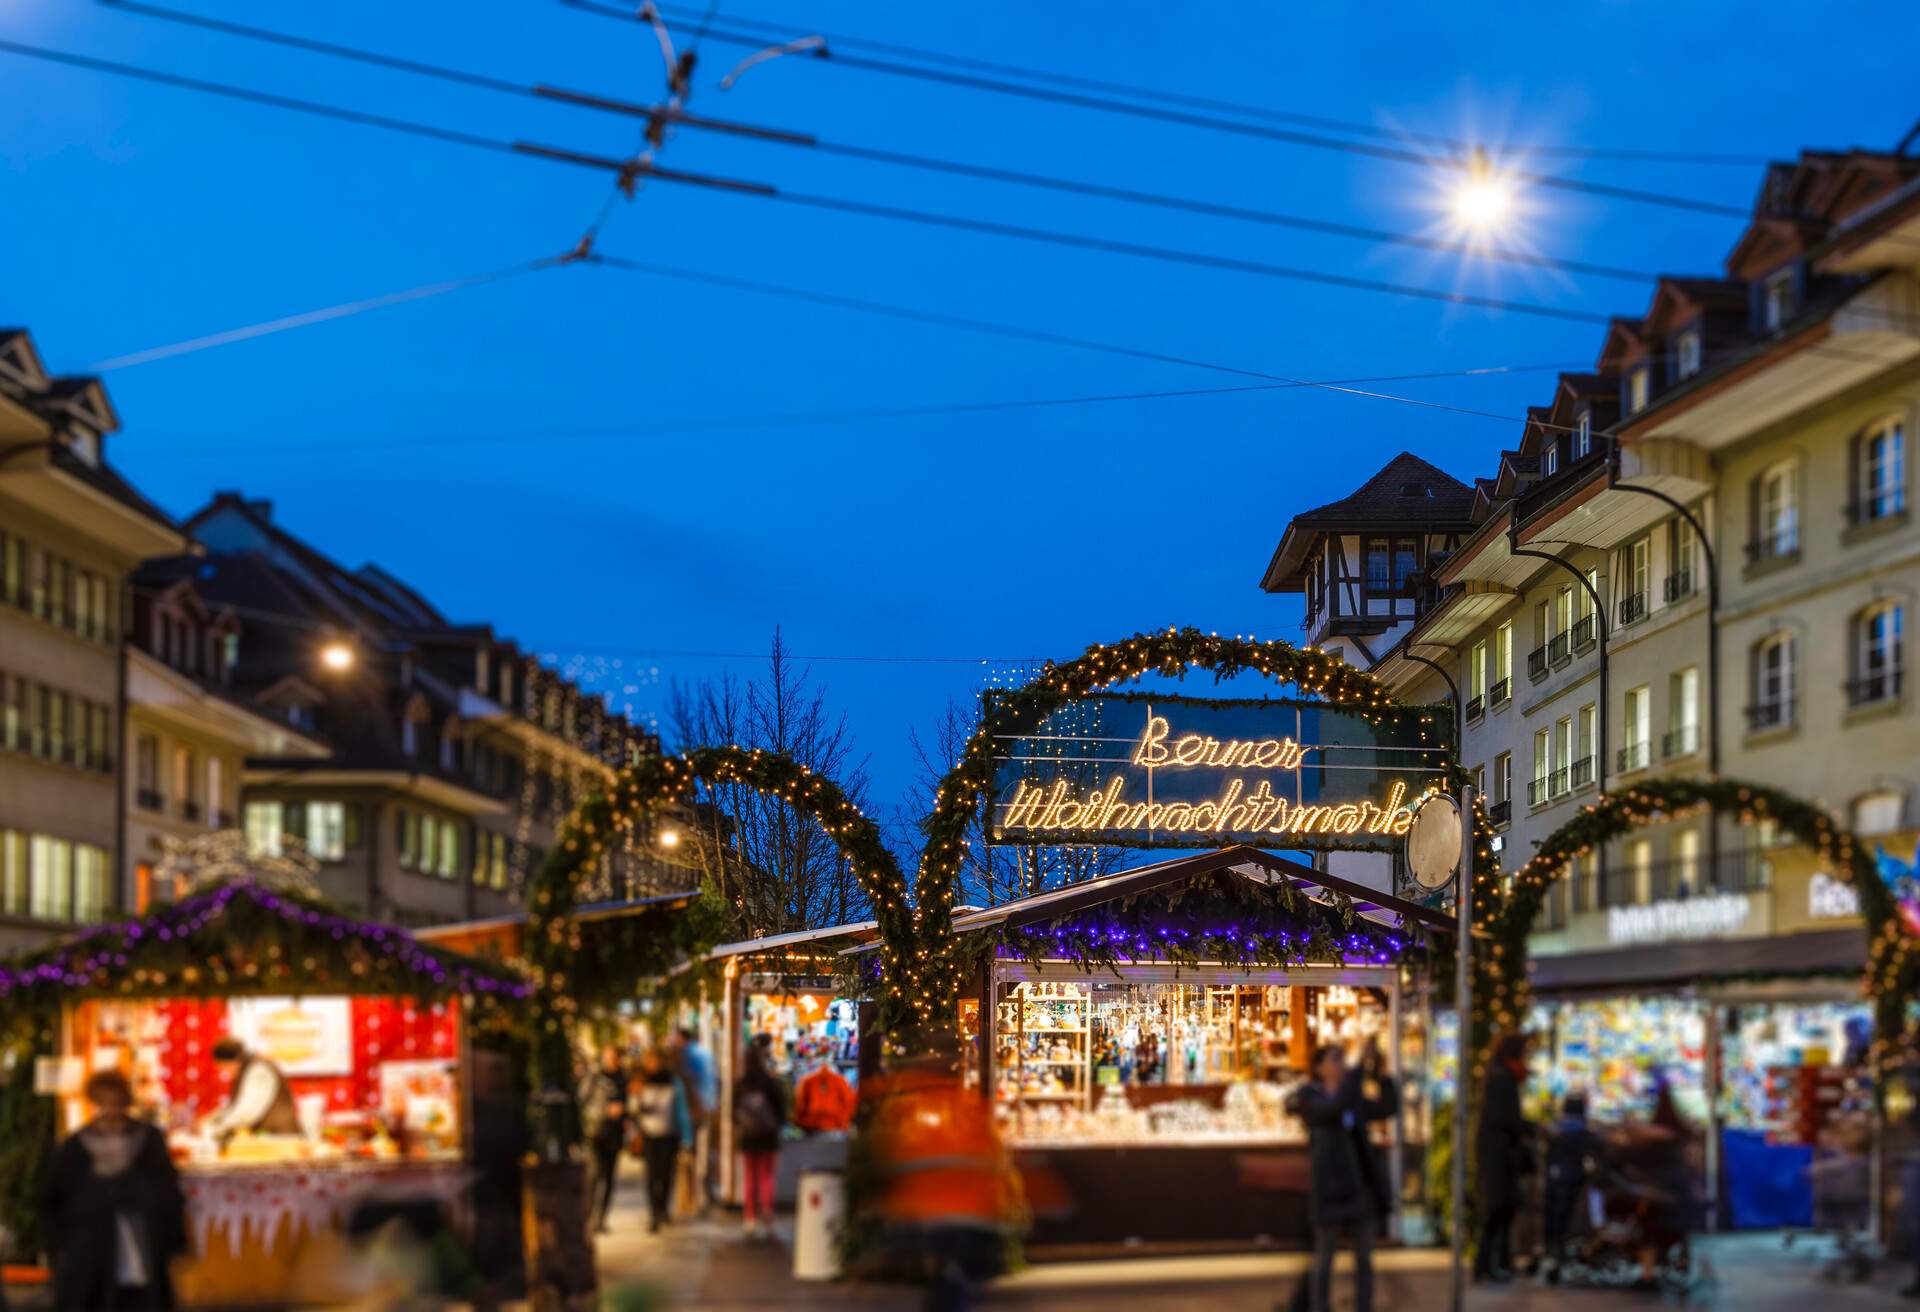 Switzerland-Bern-Christmas-Waisenhausplatz-old-town